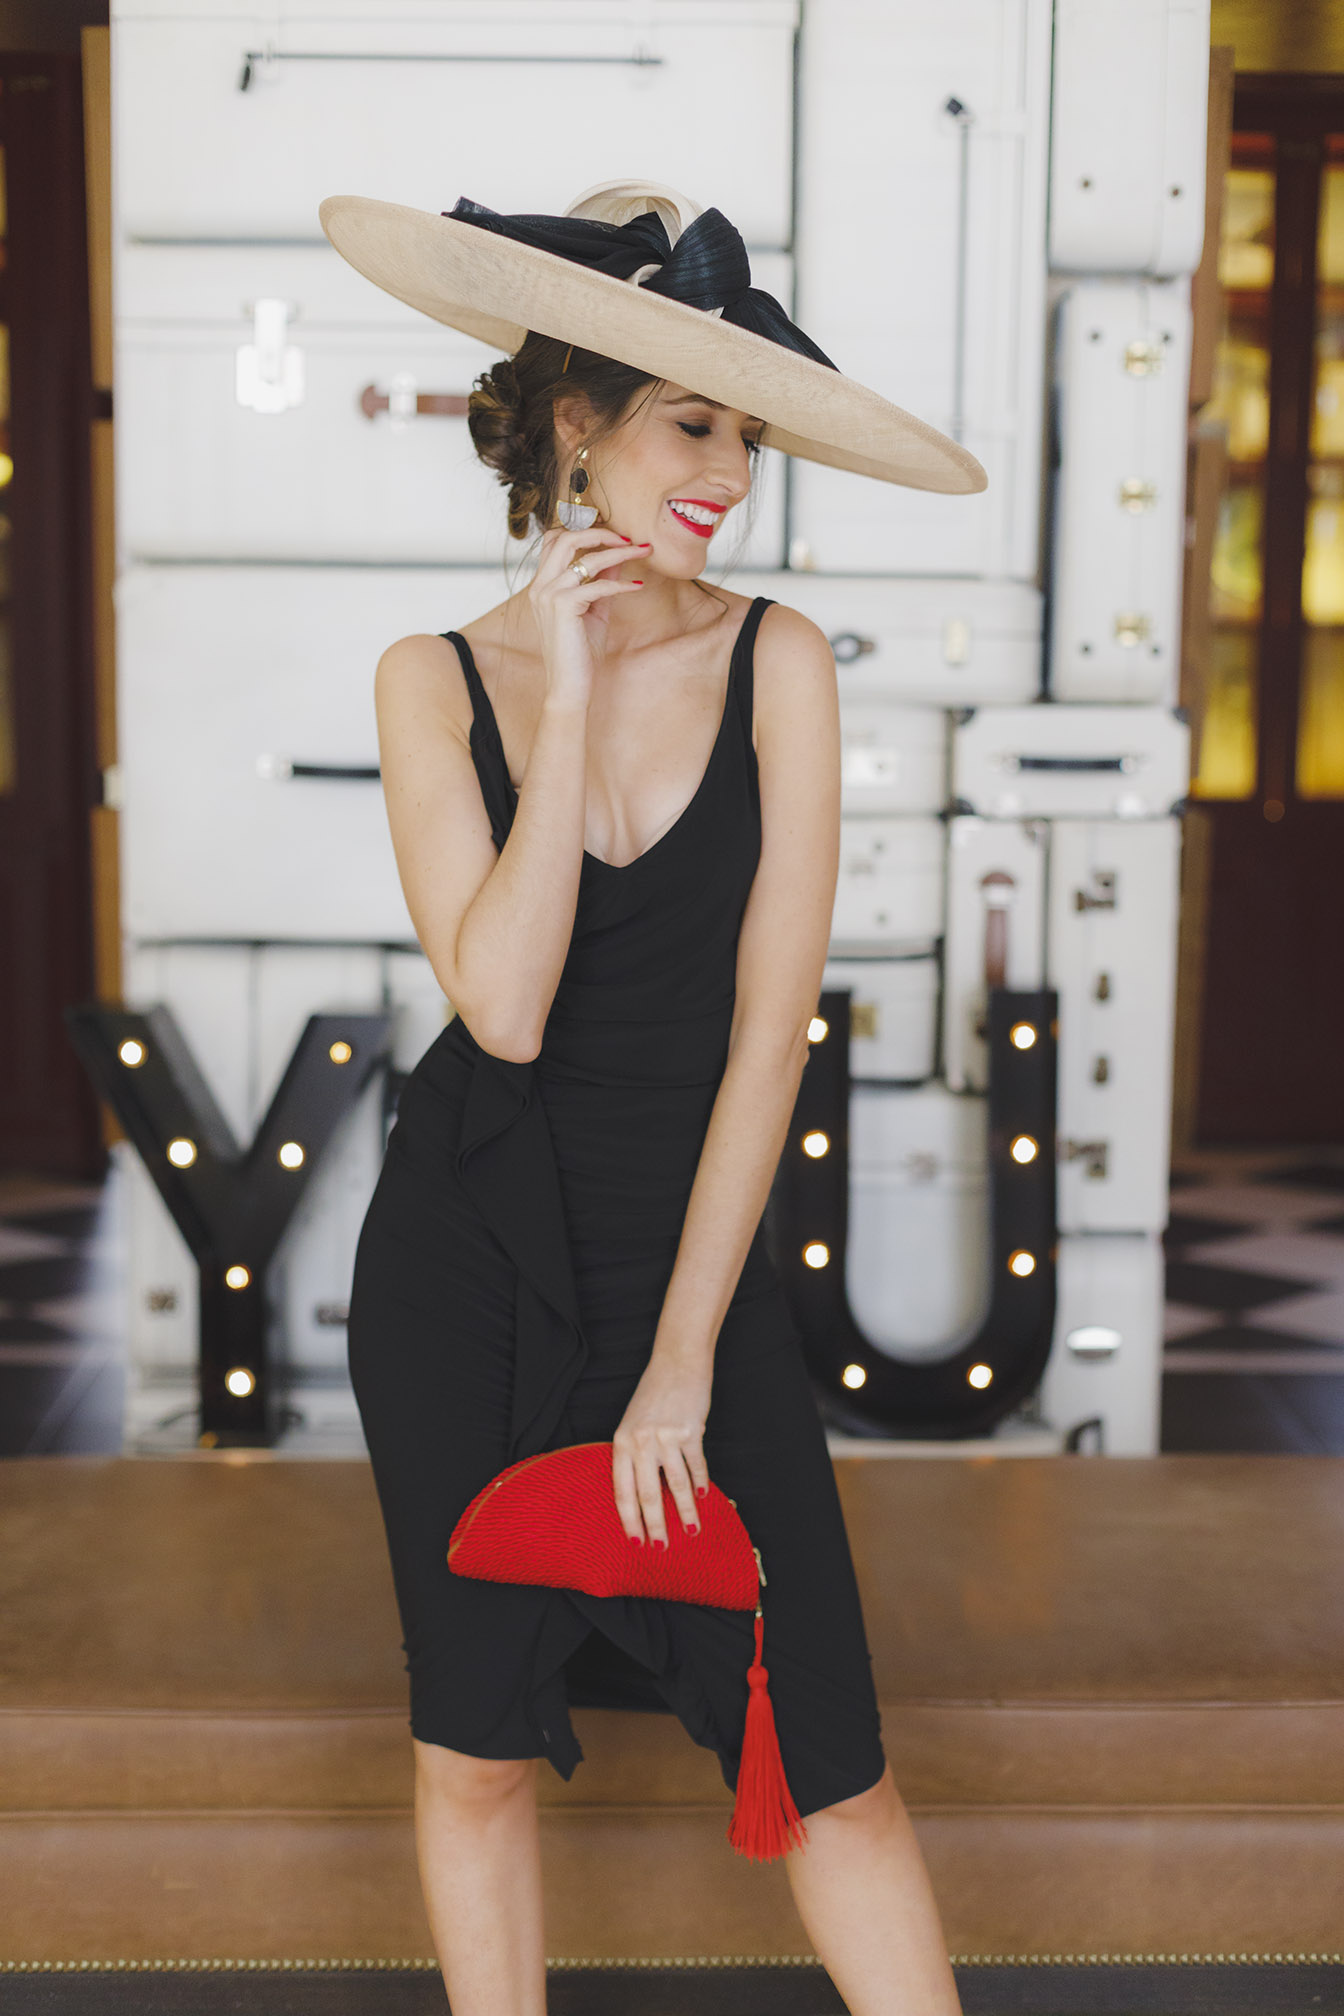 Look invitada boda 2018 vestido negro complementos rojo pamela 